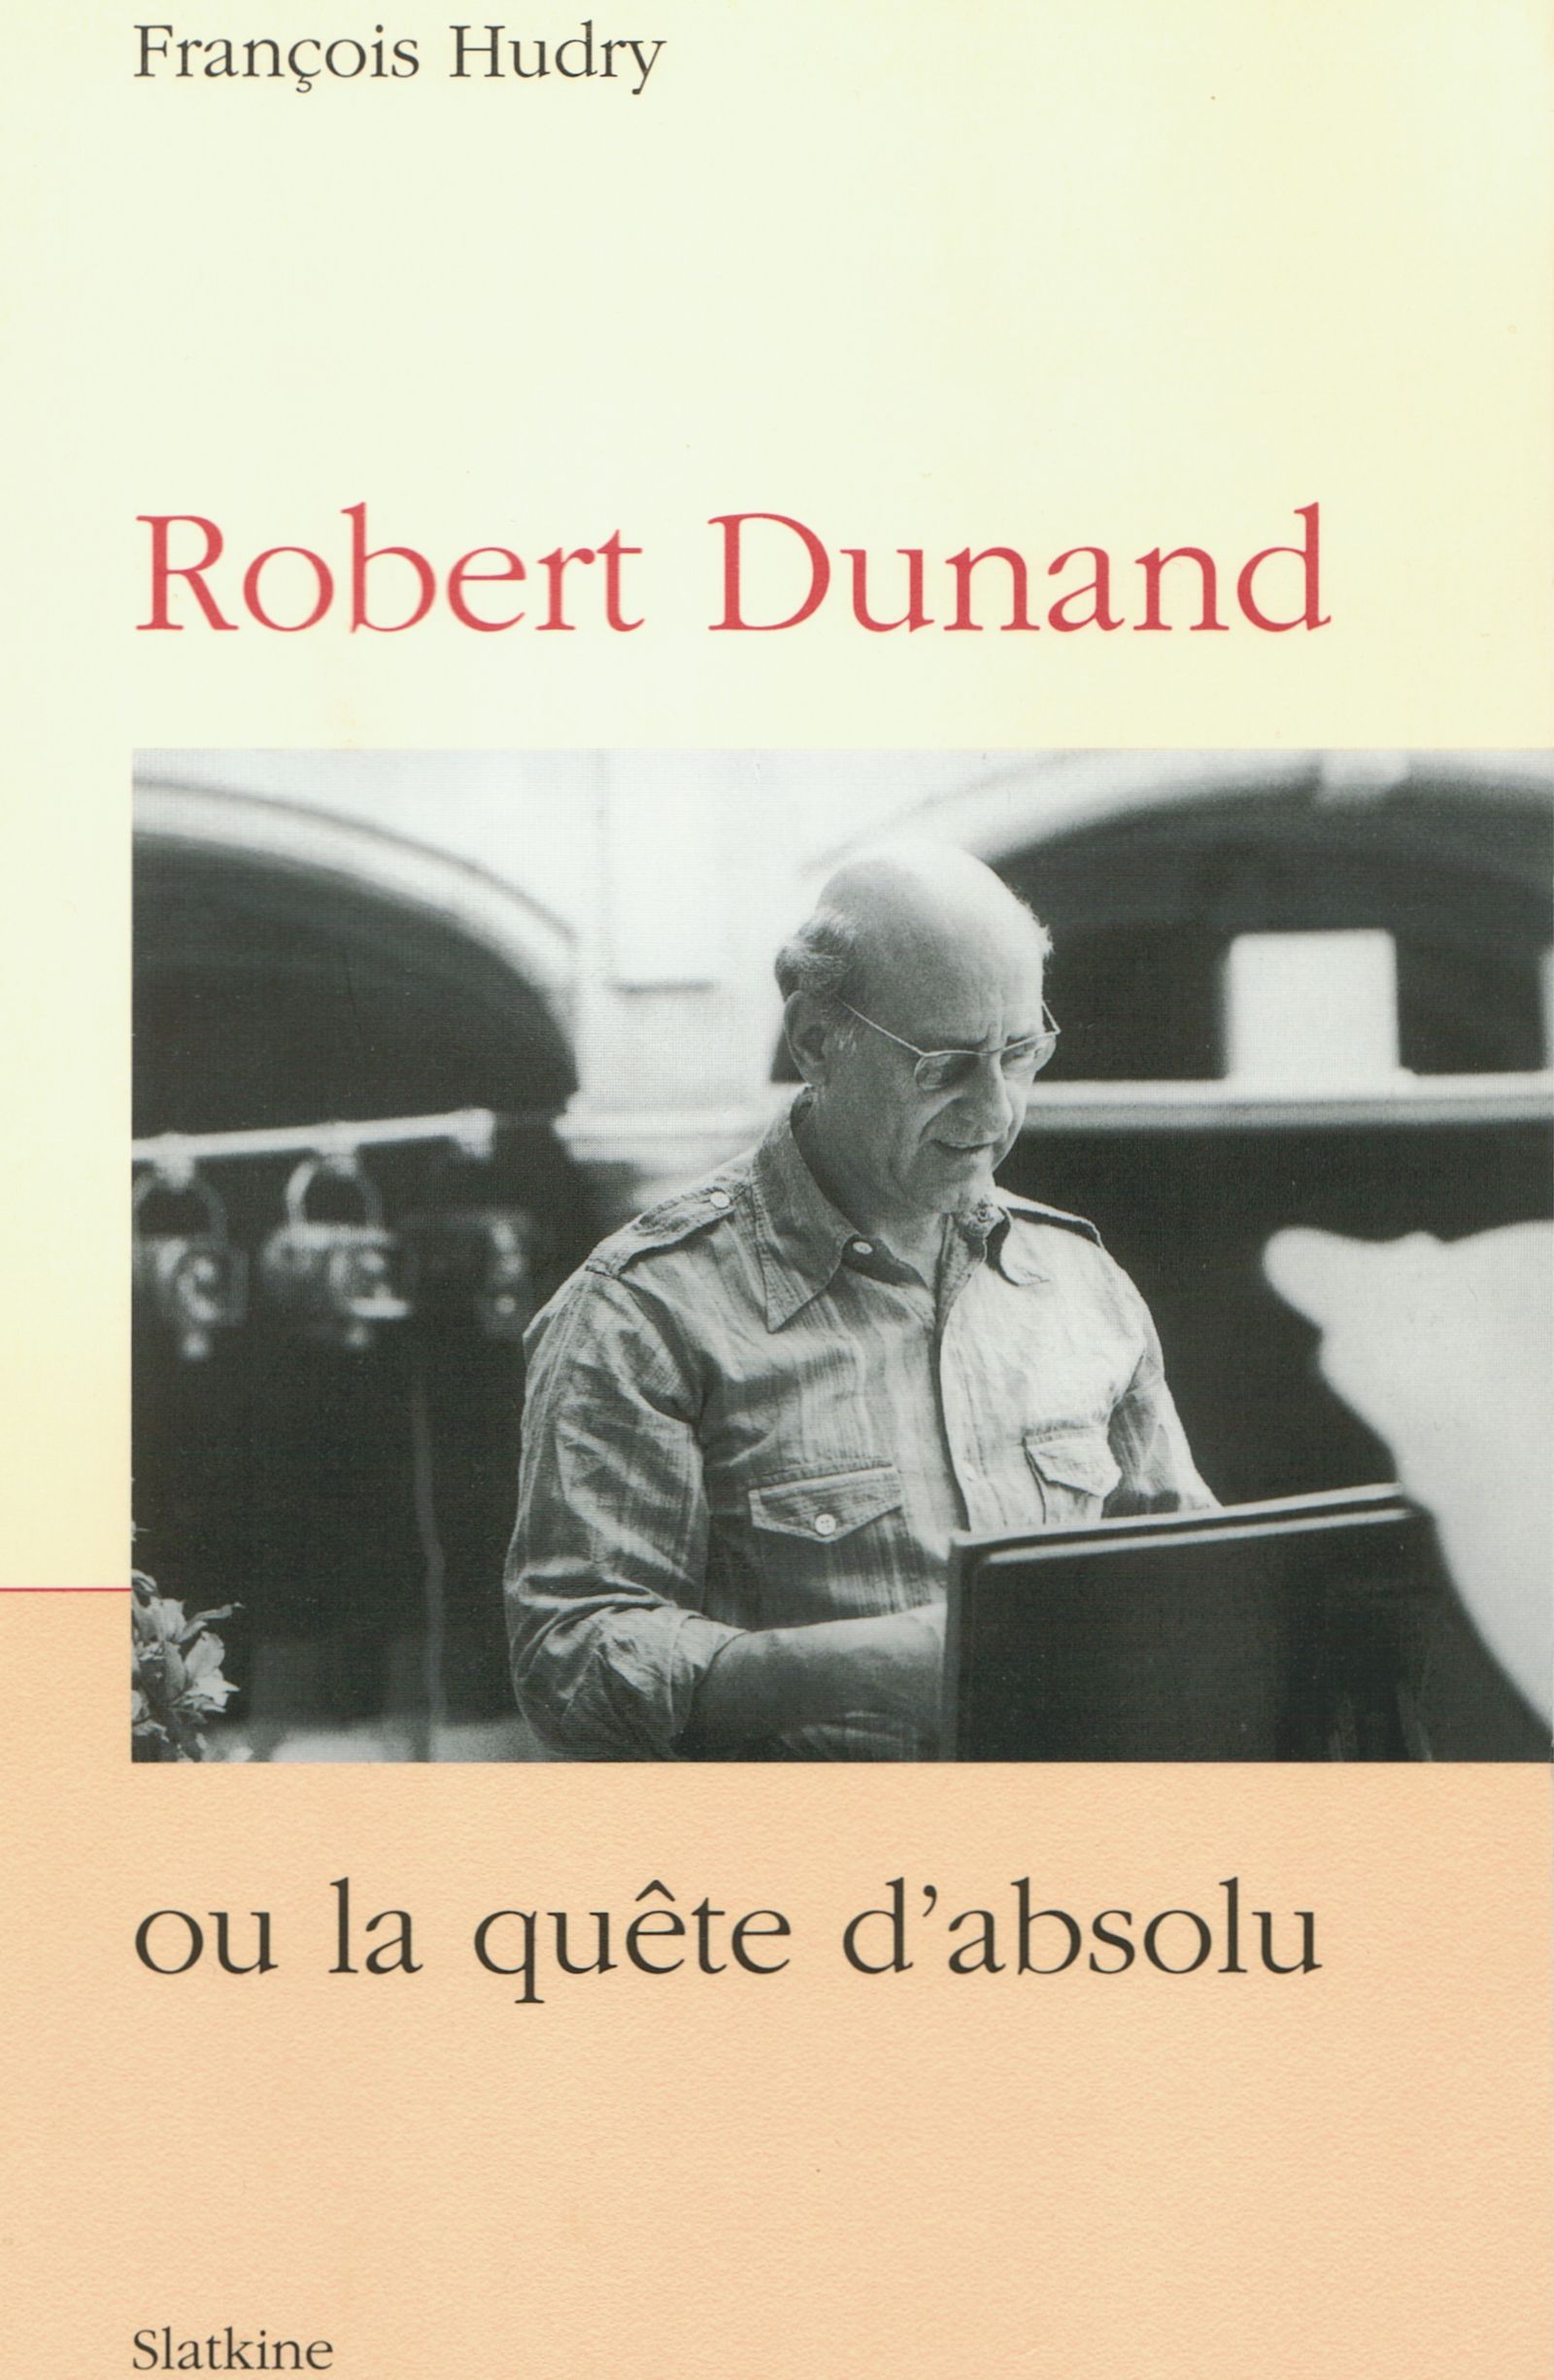 Page de couverture de l'ouvrage de François Hudry «Robert Dunand ou La quête d'absolu» paru aux Éditions Slatkine (ISBN-10: 2832100627, ISBN-13: 978-2832100622)